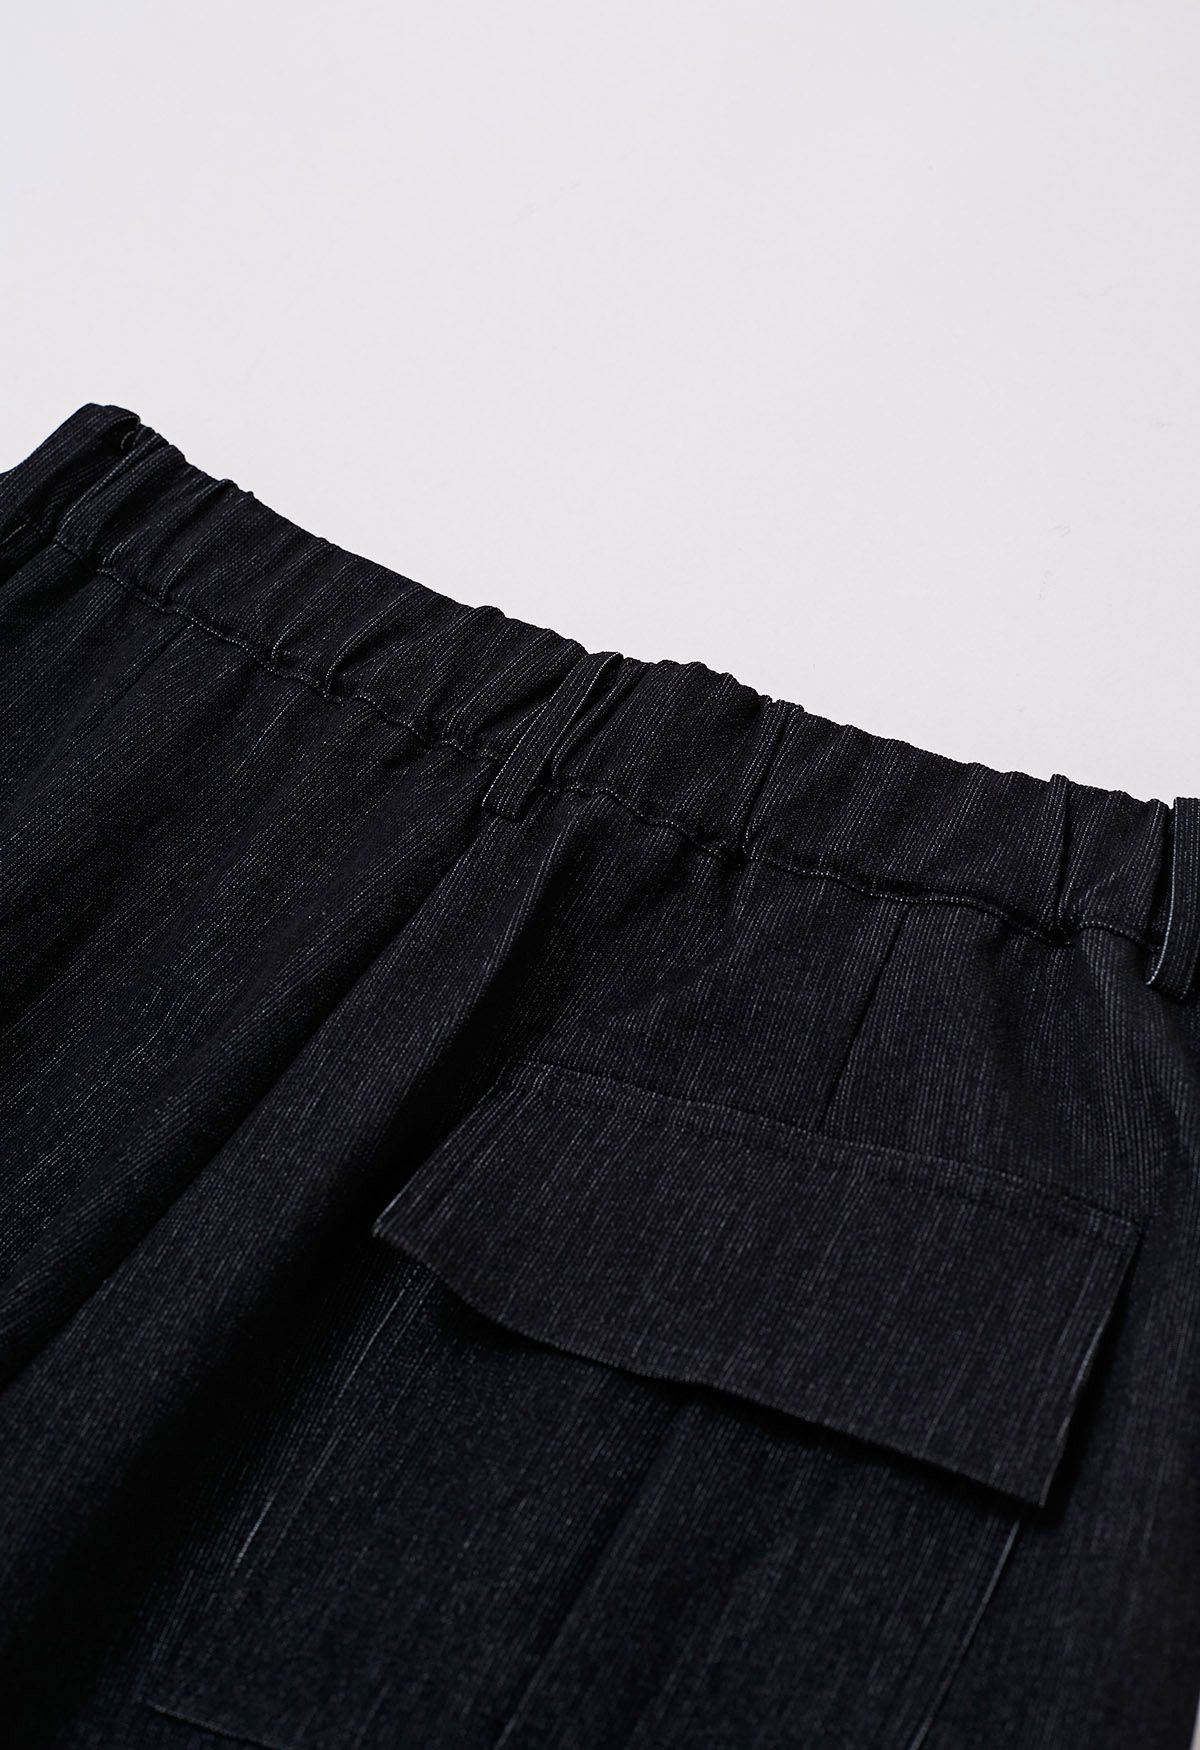 Pantalones anchos plisados cómodos a medida en negro